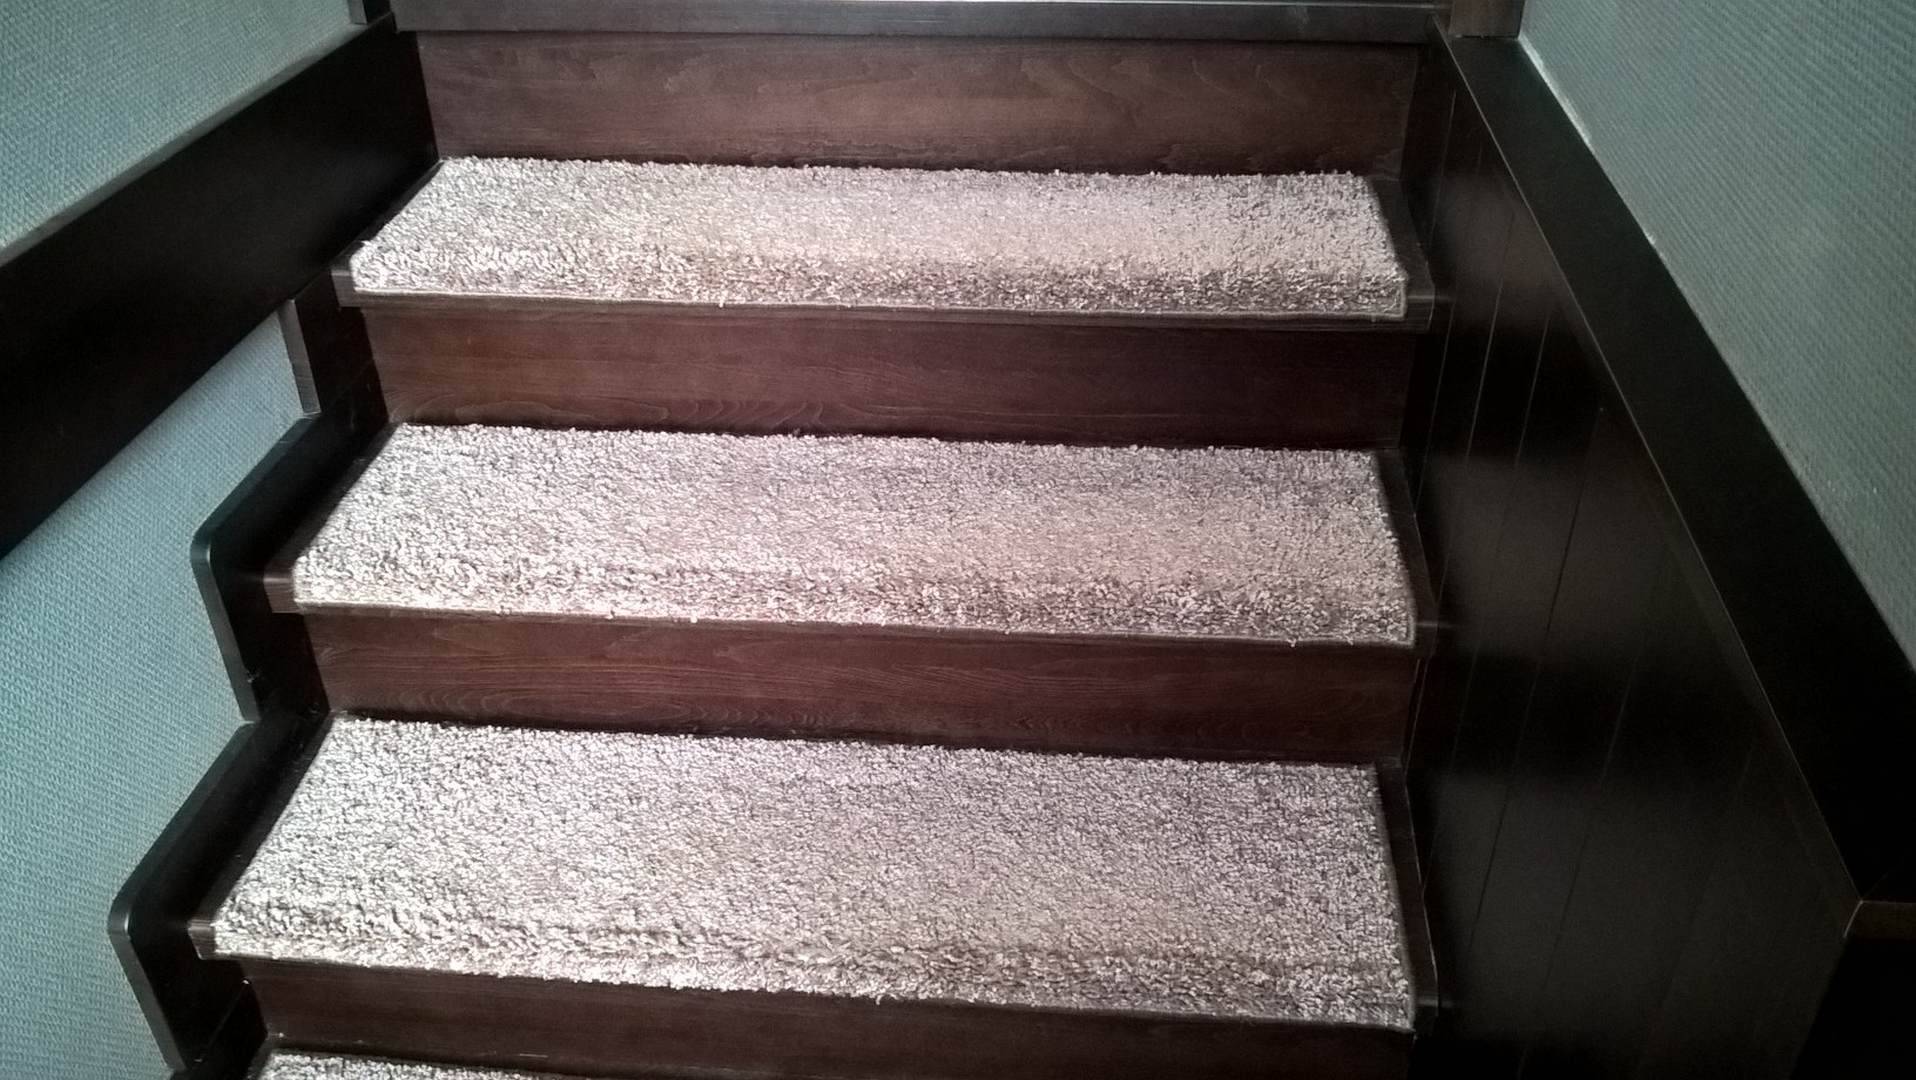 Использование накладок при укладке ковролина на лестницы